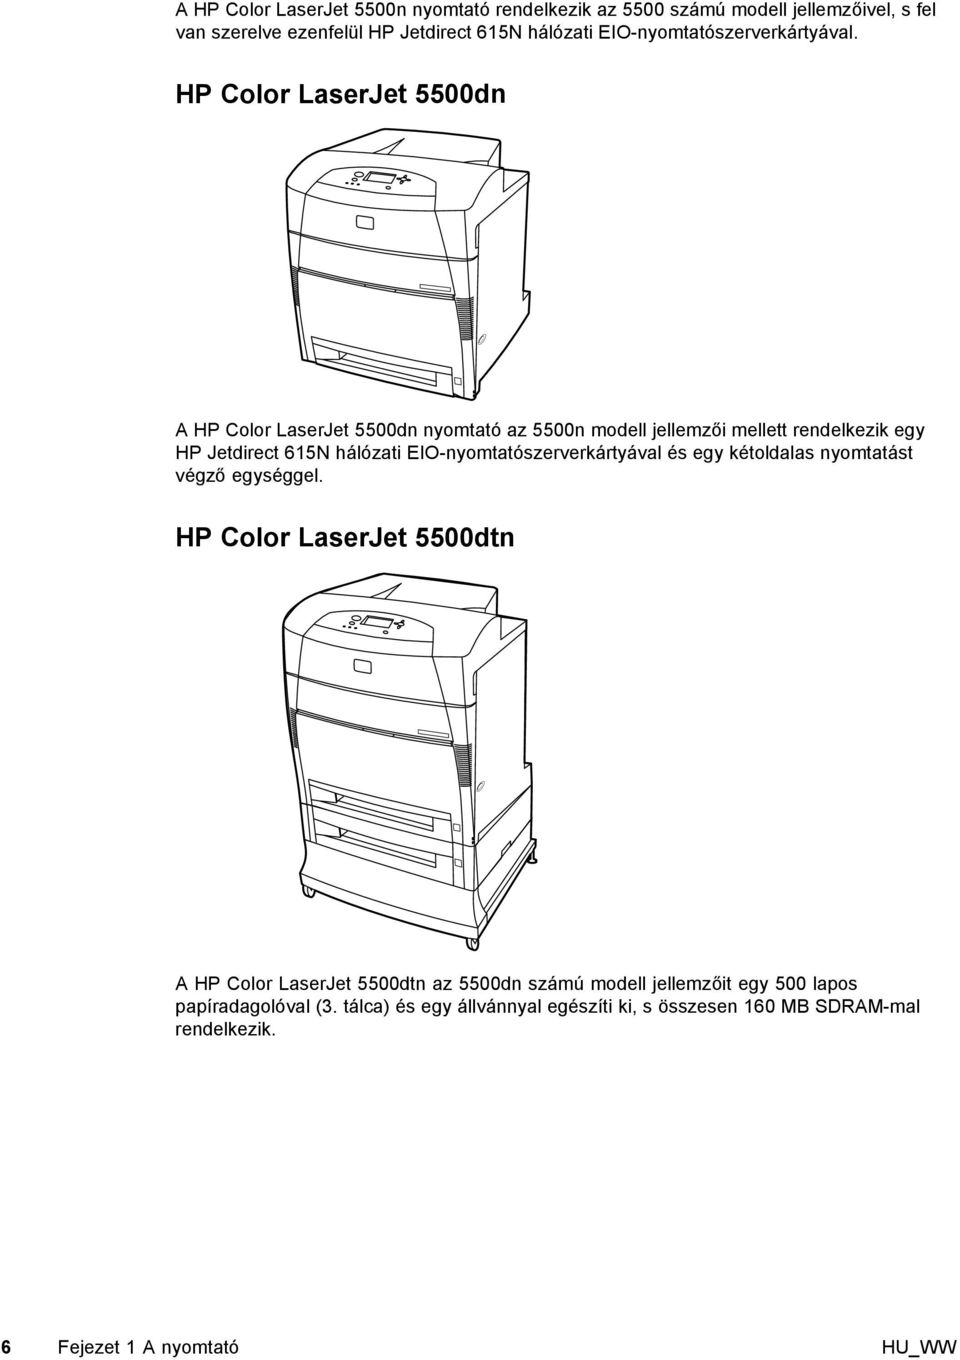 HP Color LaserJet 5500dn A HP Color LaserJet 5500dn nyomtató az 5500n modell jellemzői mellett rendelkezik egy HP Jetdirect 615N hálózati